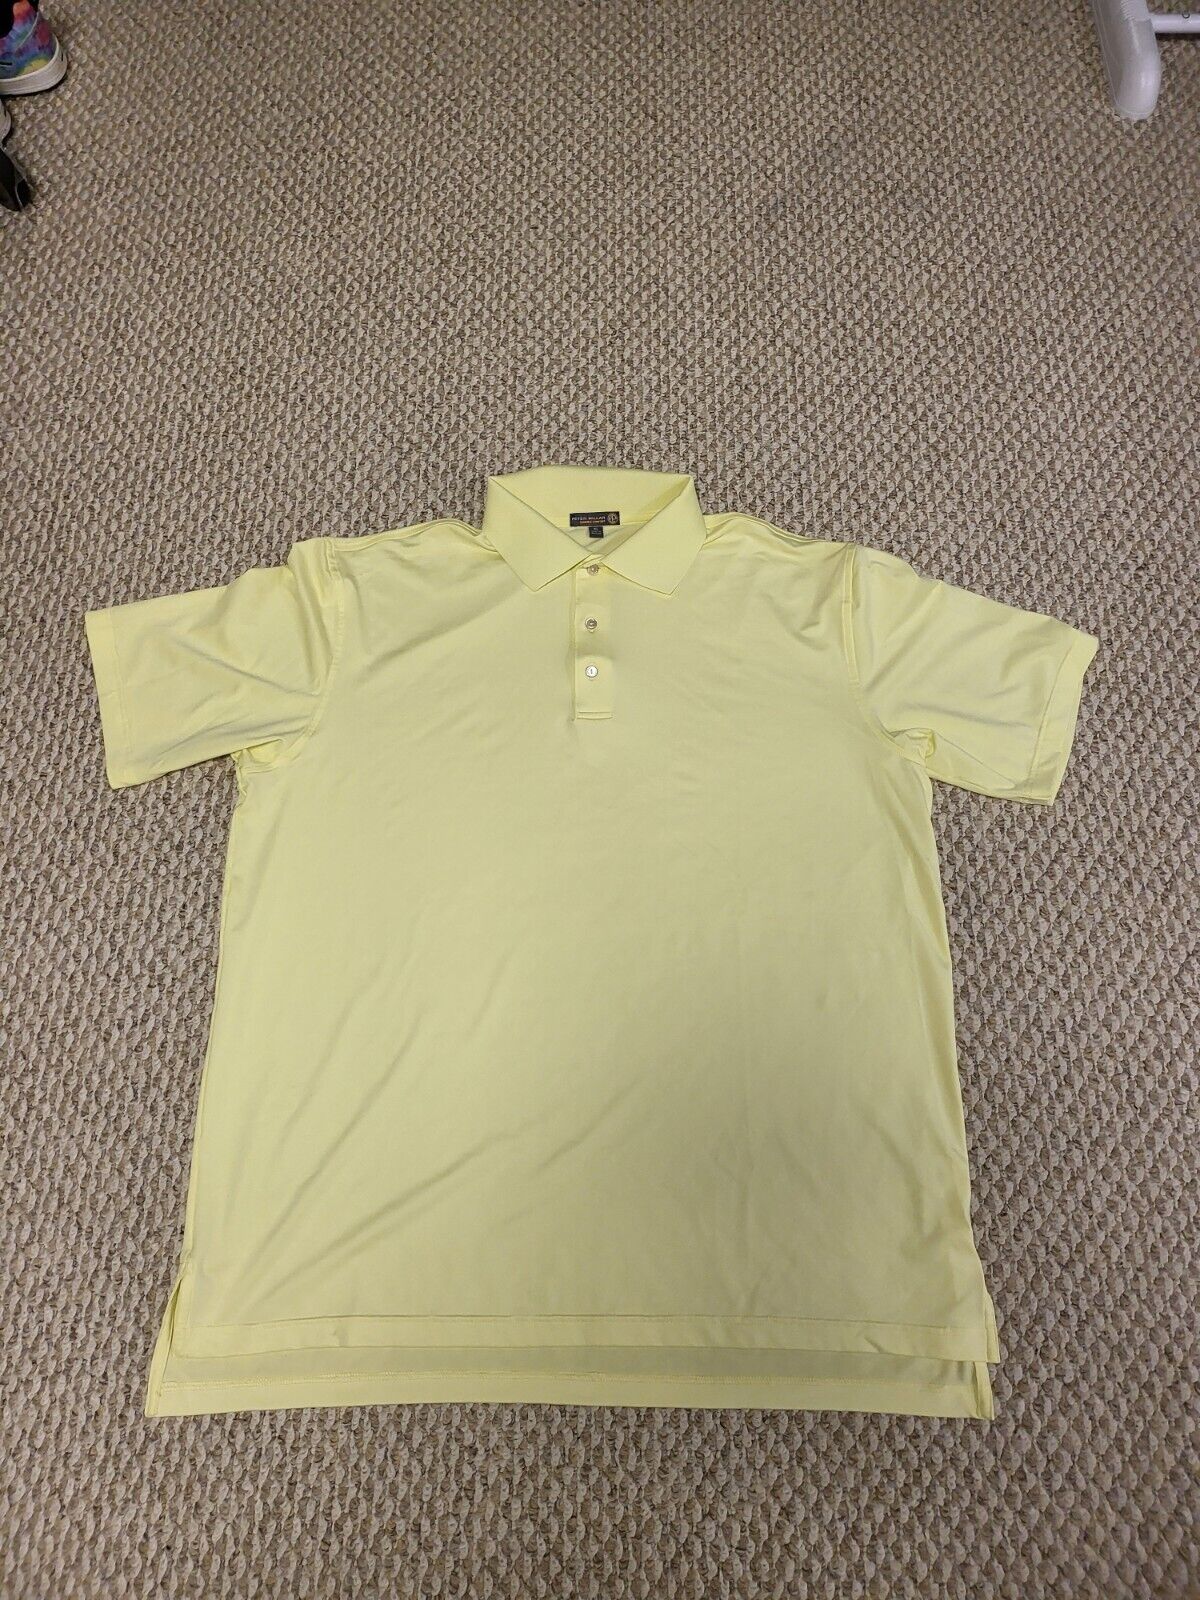 Peter Millar Summer Comfort  Xl  yellow golf shirt - image 1